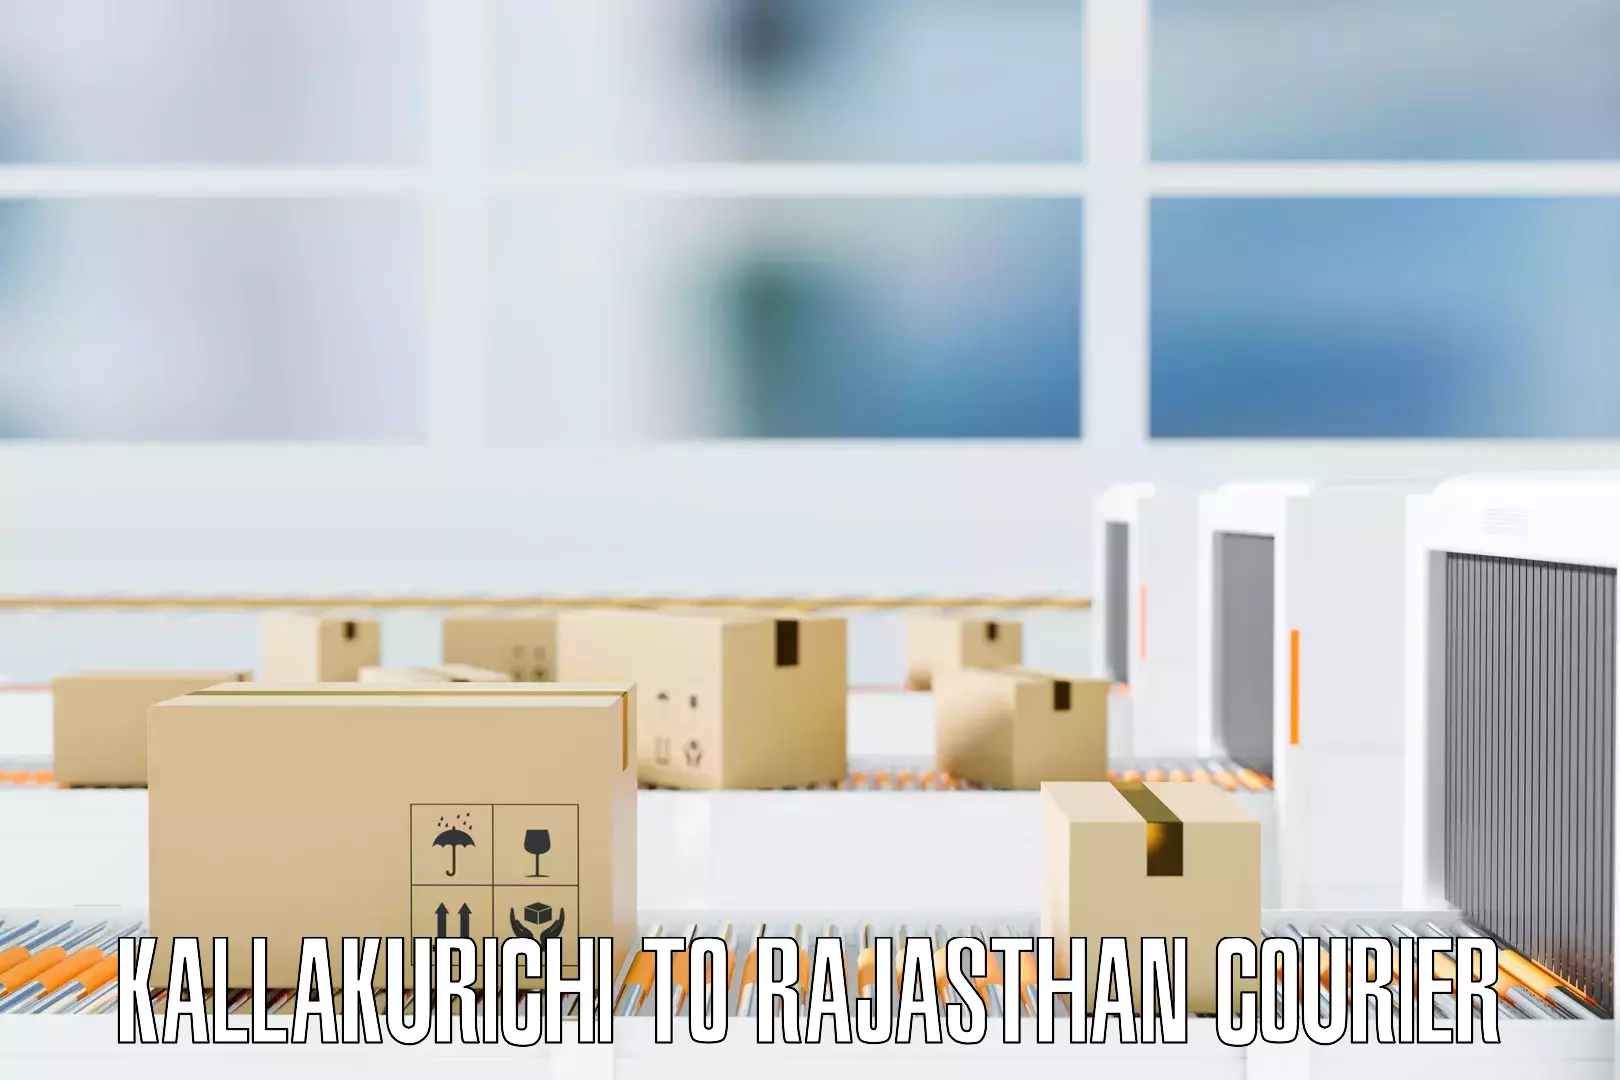 Residential furniture transport Kallakurichi to Mandalgarh